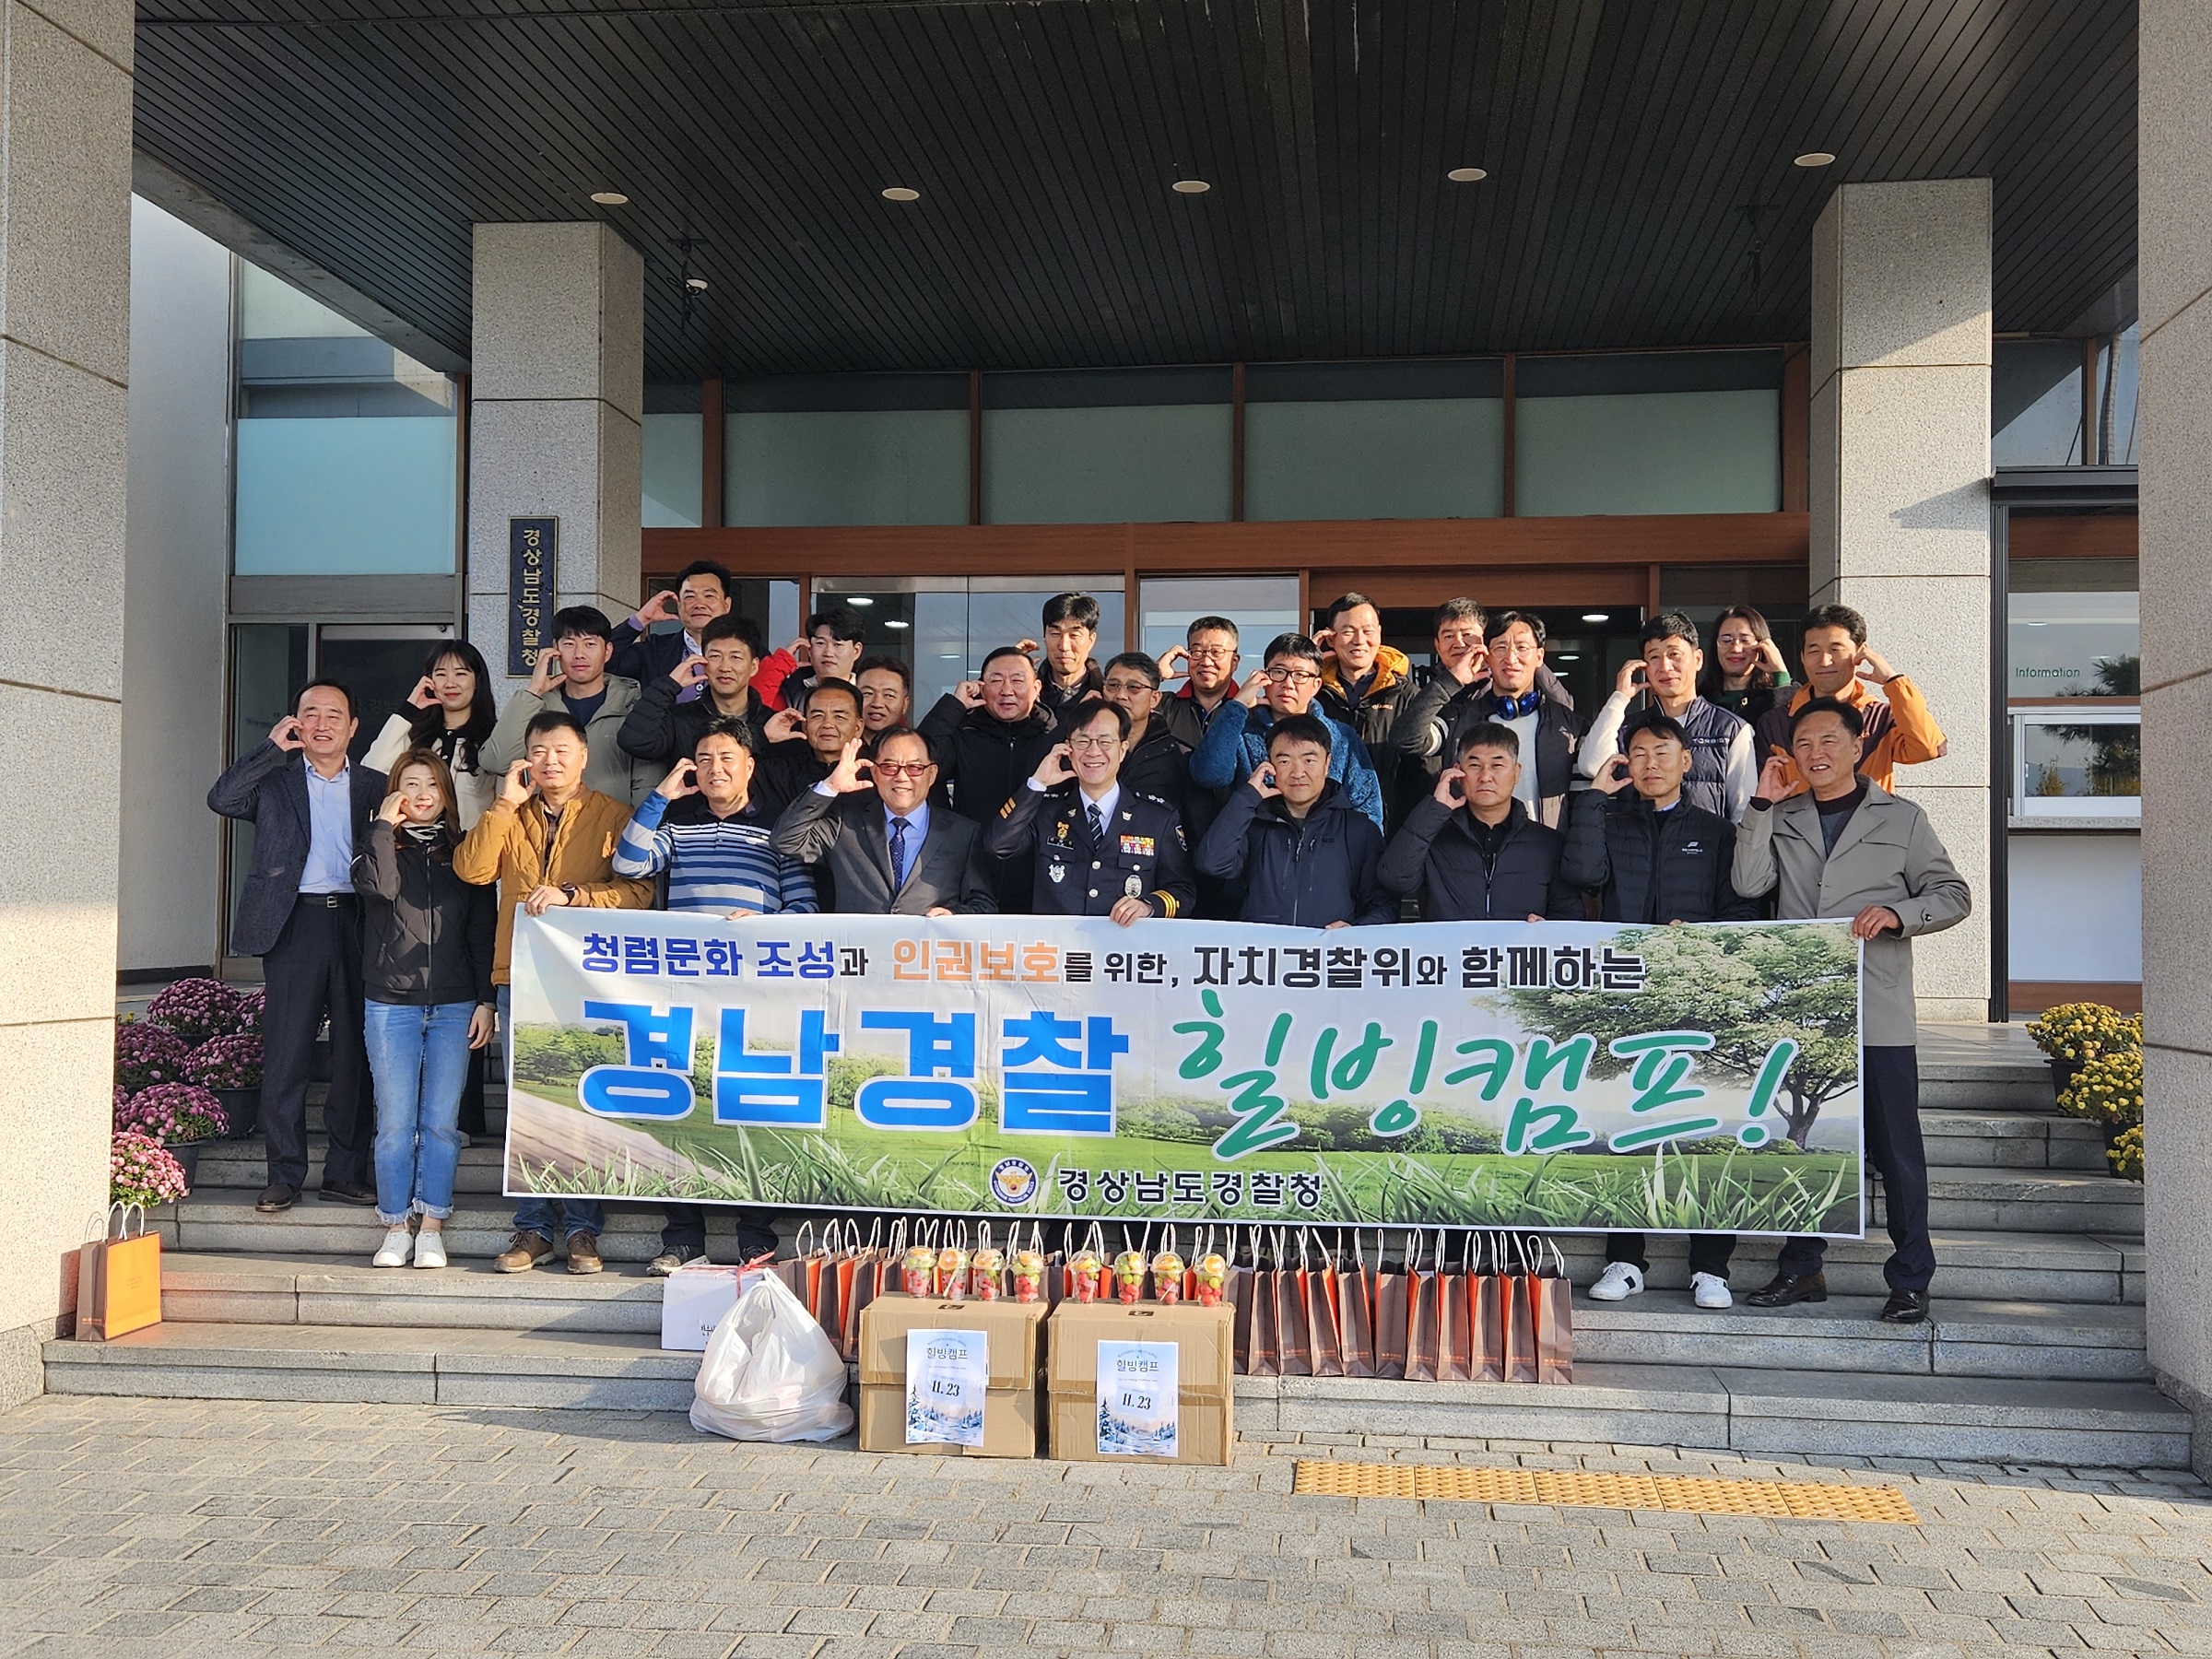 도경찰청과 함꼐하는 청렴인권 힐빙캠프 개최(11.23)의 파일 이미지